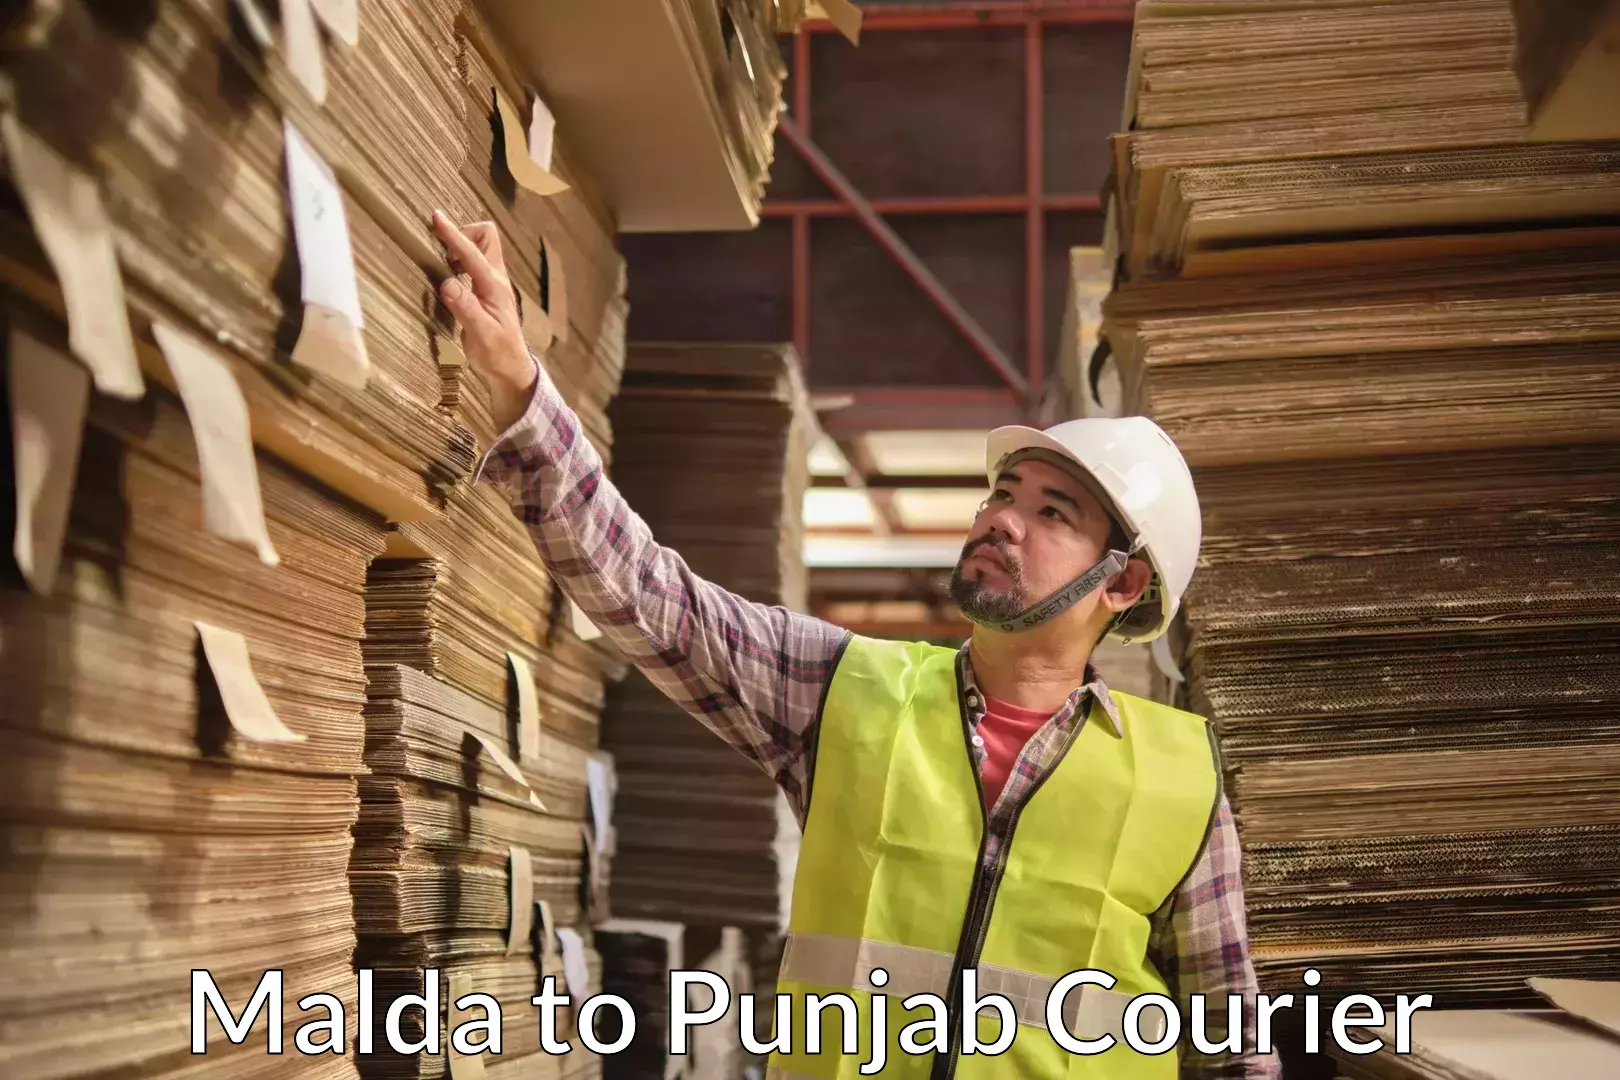 Furniture transport solutions Malda to Punjab